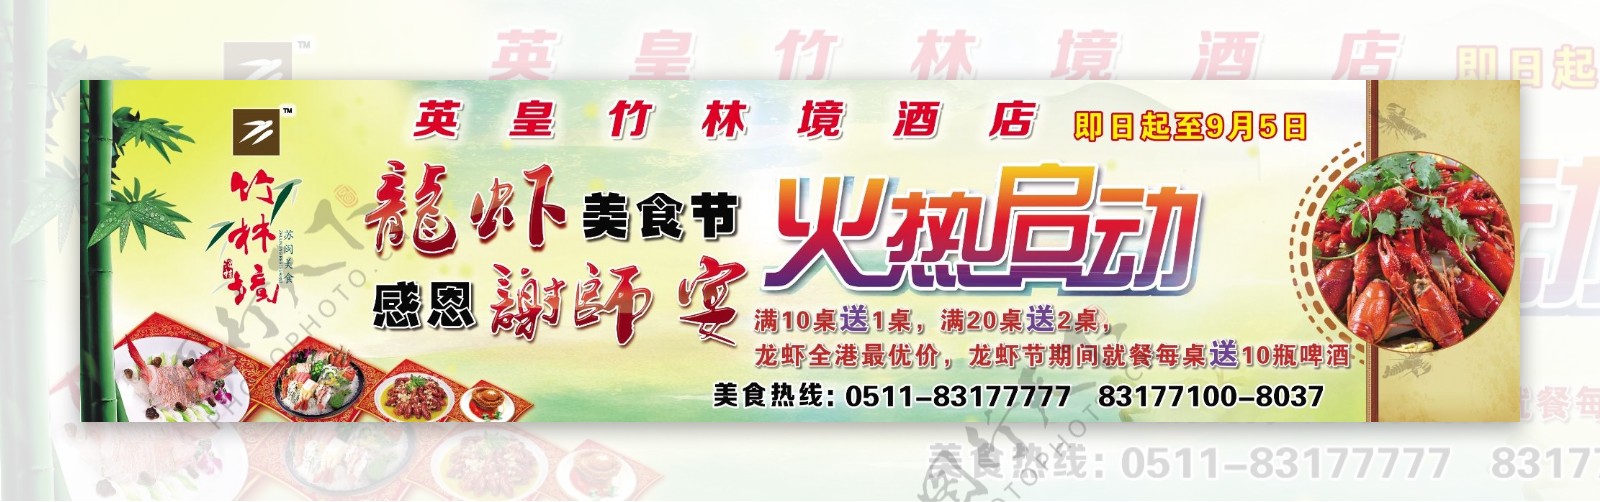 龙虾节海报广告宣传辣椒图片